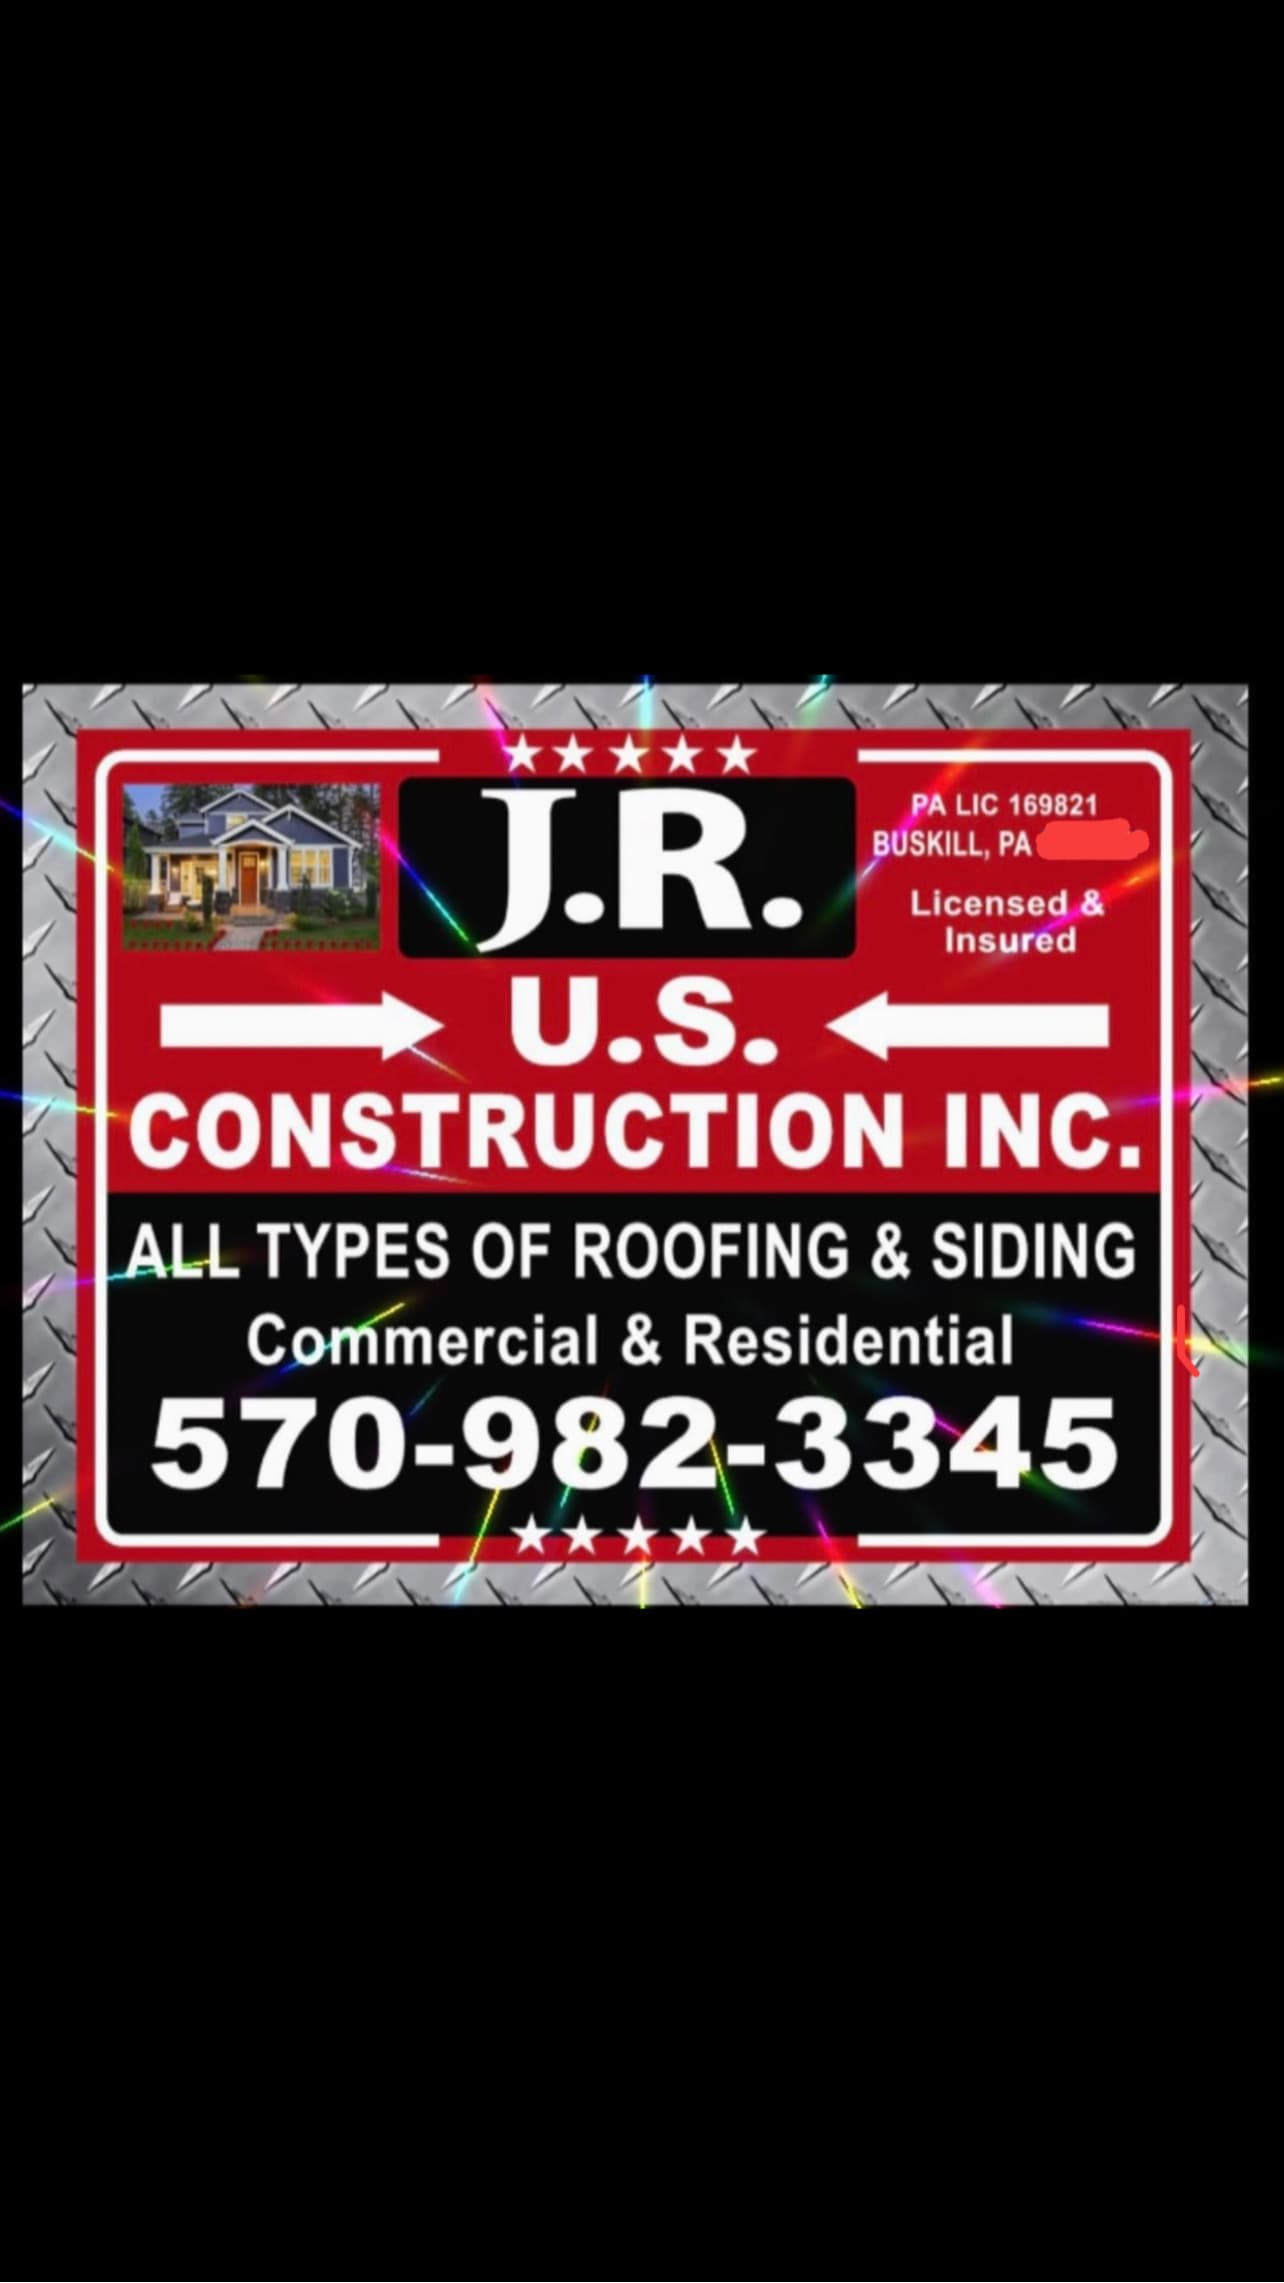 JR U.S CONSTRUCTION INC